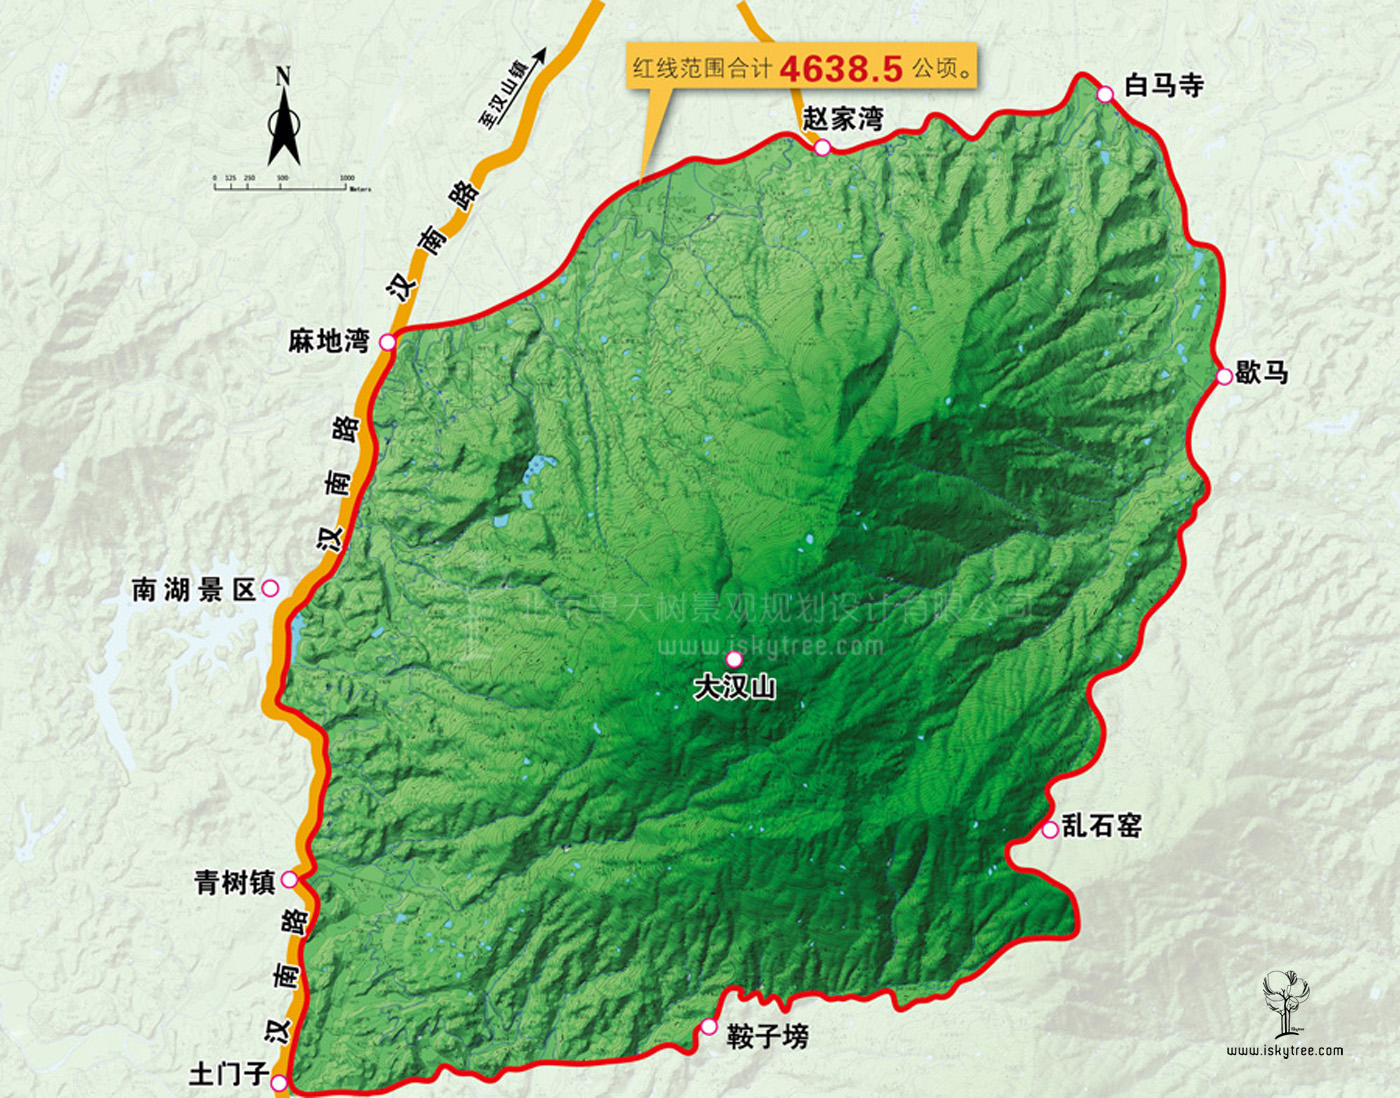 天漢水城旅游區漢山片區策劃范圍